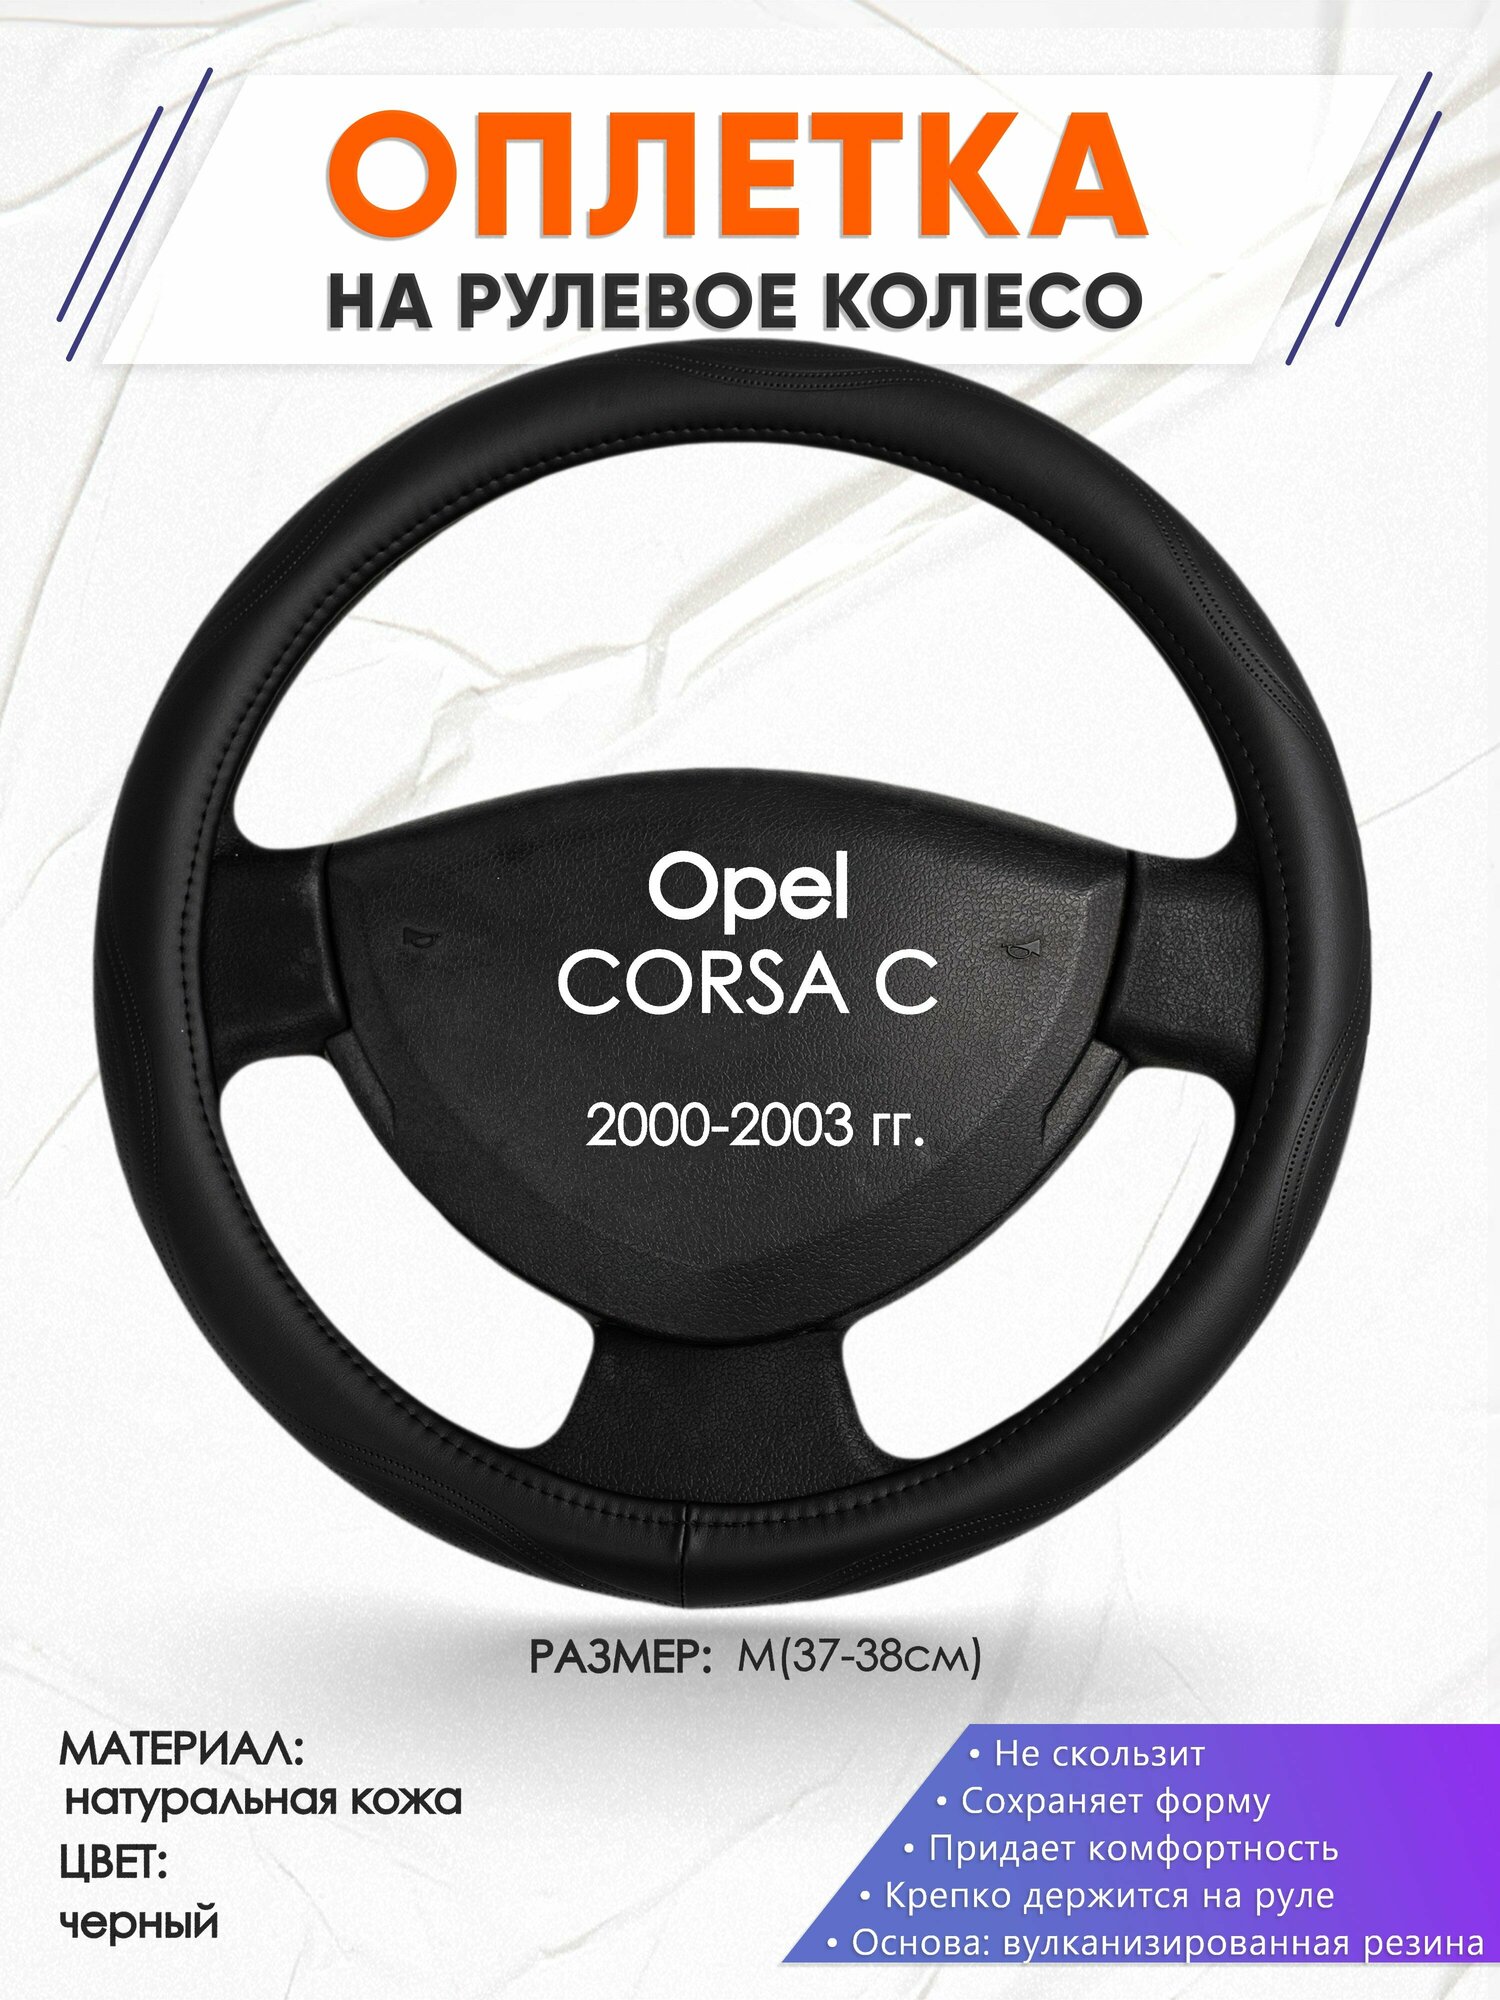 Оплетка наруль для Opel CORSA C(Опель Корса) 2000-2003 годов выпуска размер M(37-38см) Натуральная кожа 90